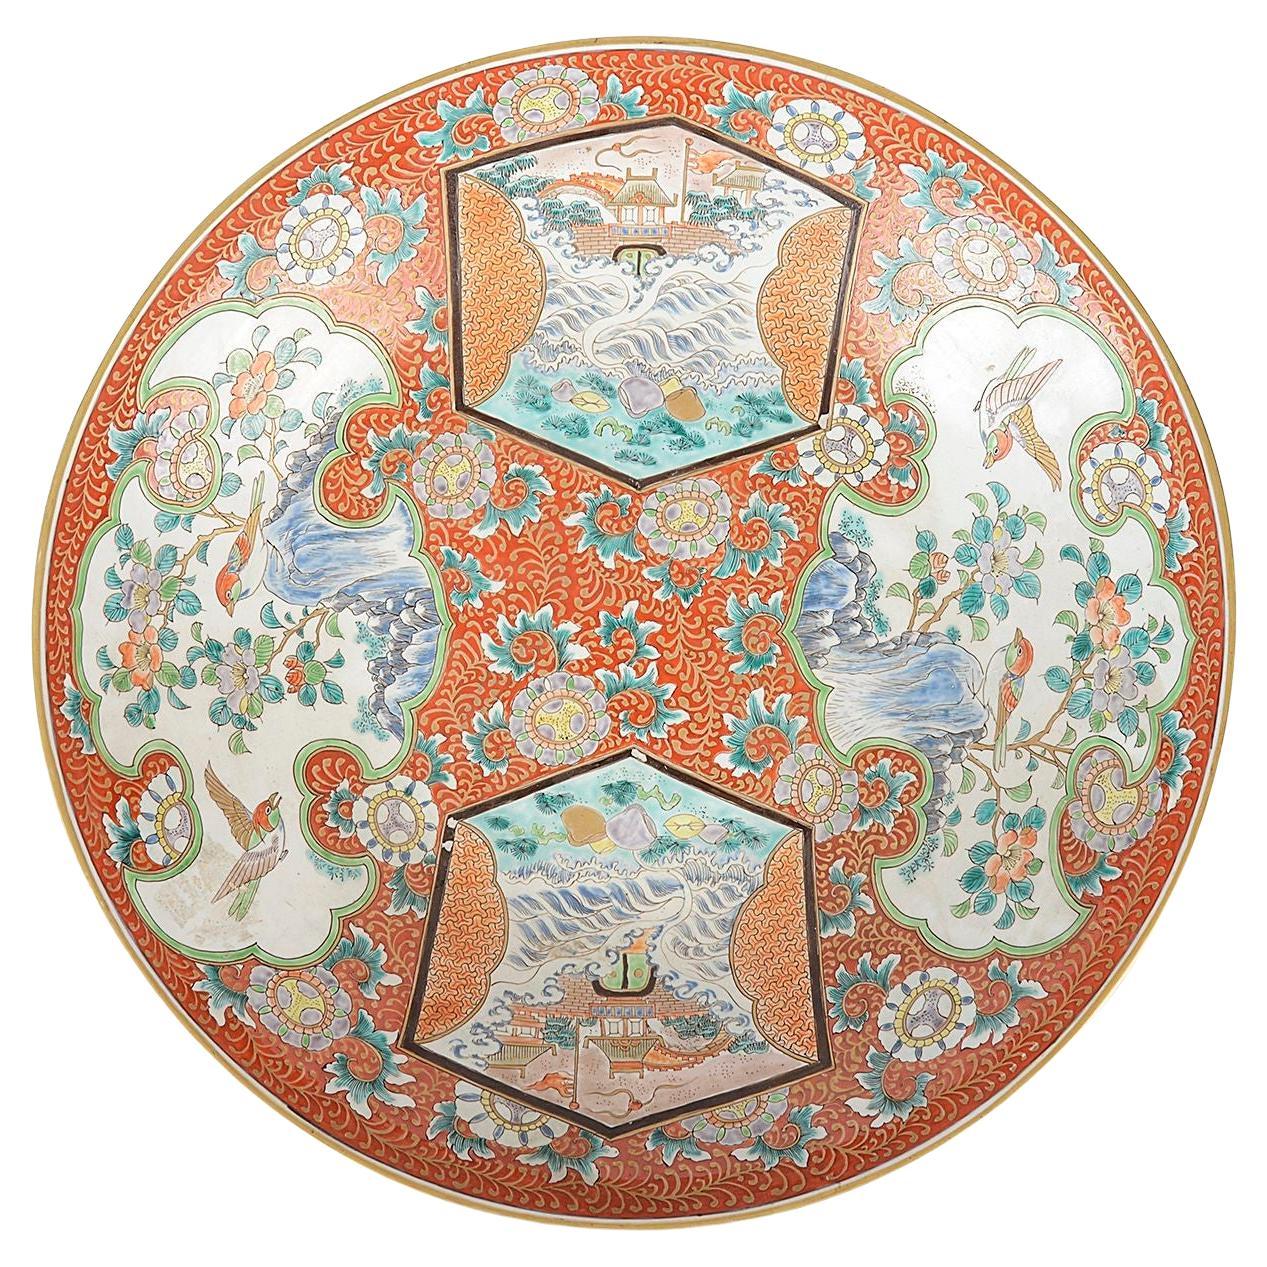 Große japanische Imari-Tellerplatte. Durchmesser von 60 cm (23,5"). 19. Jahrhundert